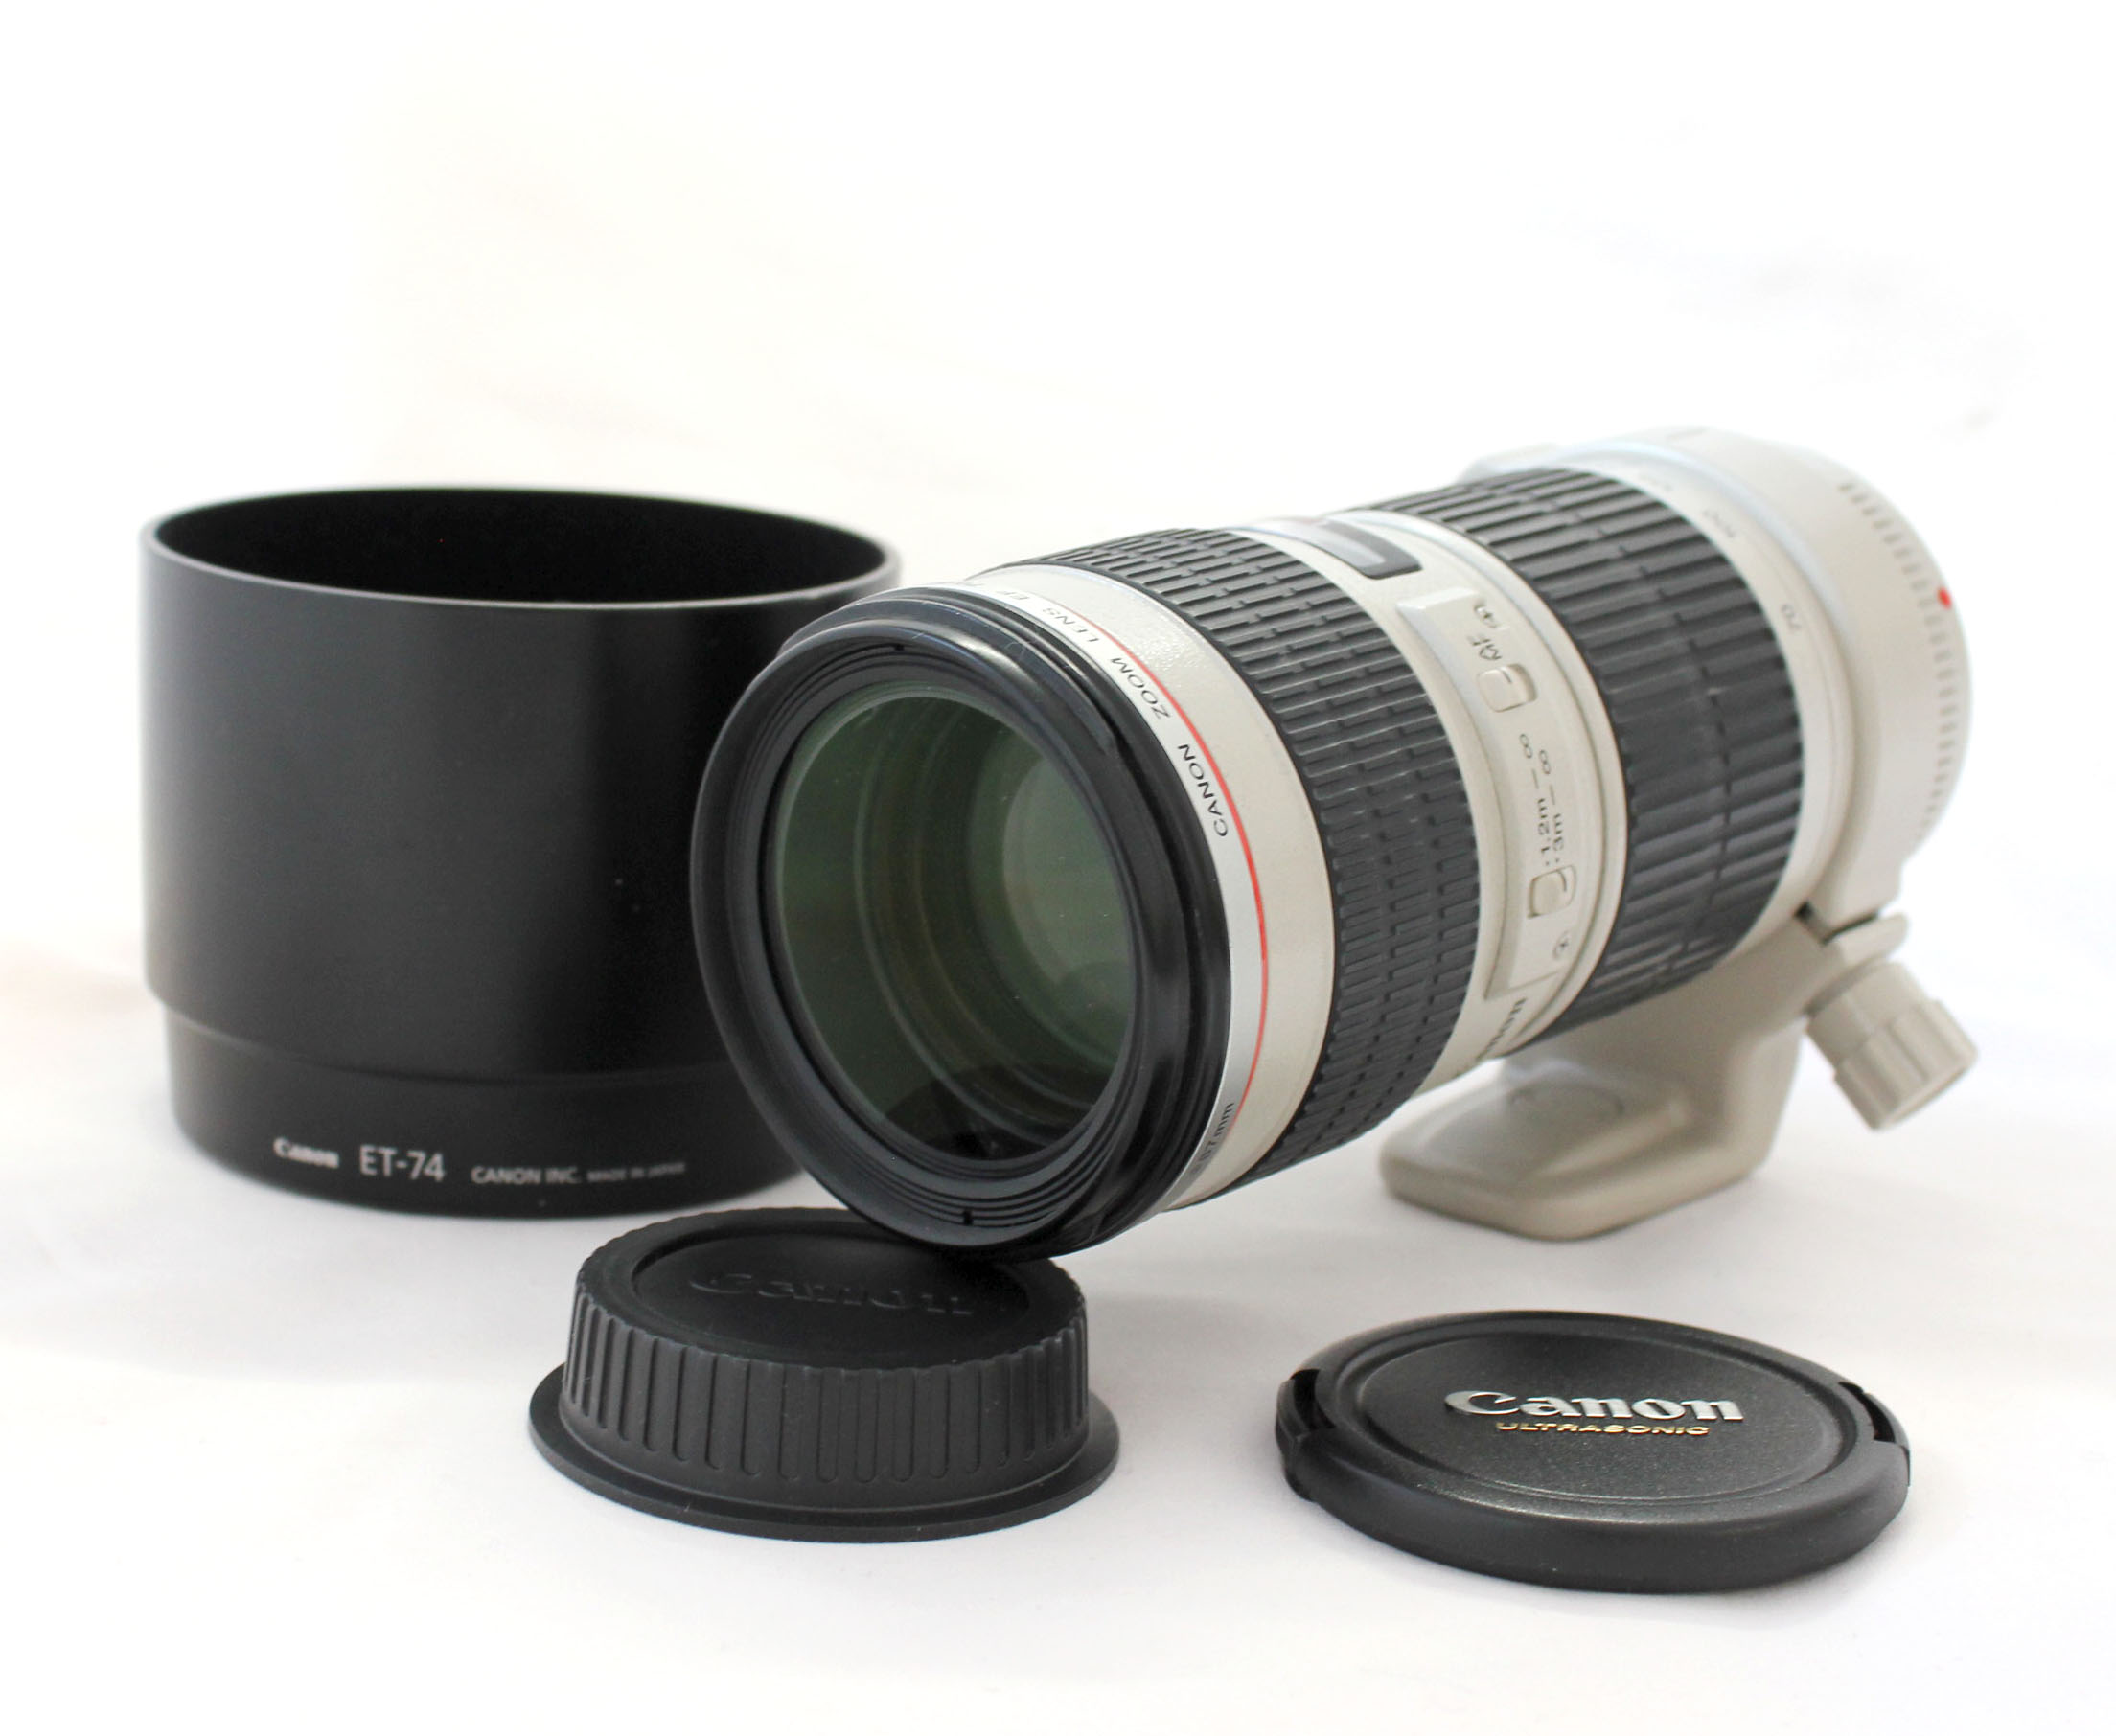  Canon EF 70-200mm F/4 L USM AF Zoom Lens with Hood ET-74 from Japan Photo 0